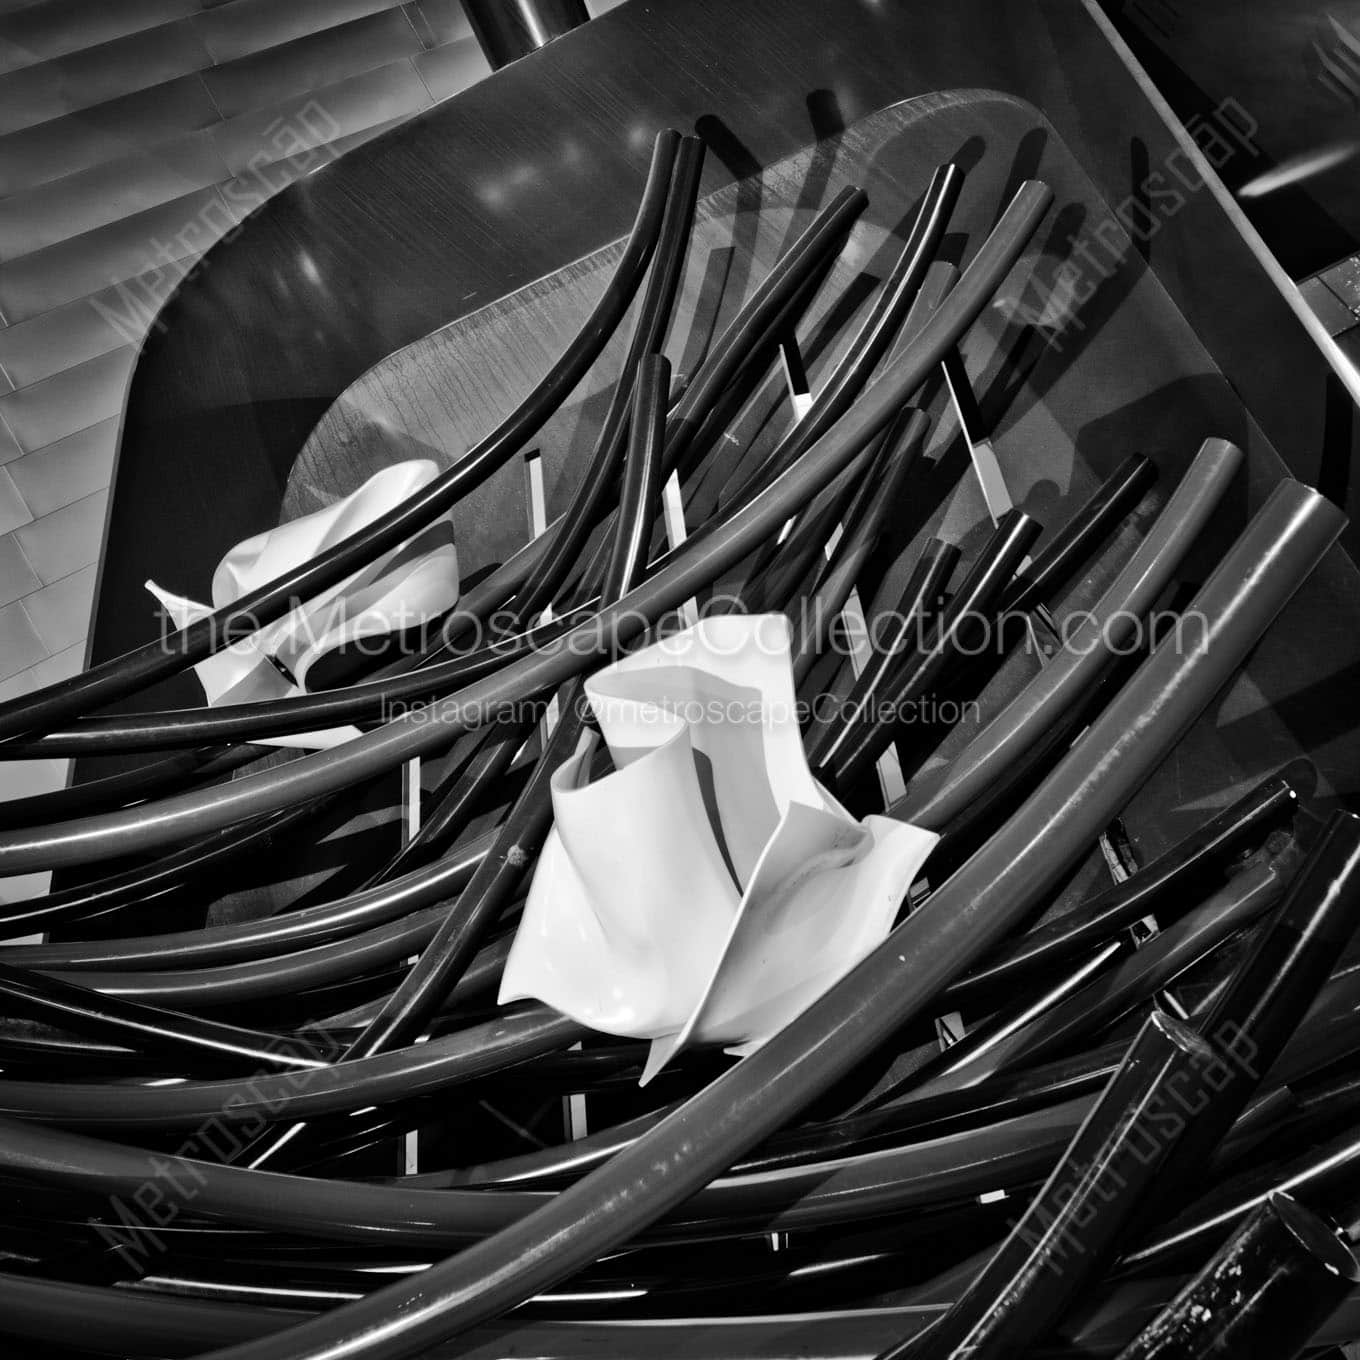 broom dustpan denver art museum Black & White Office Art